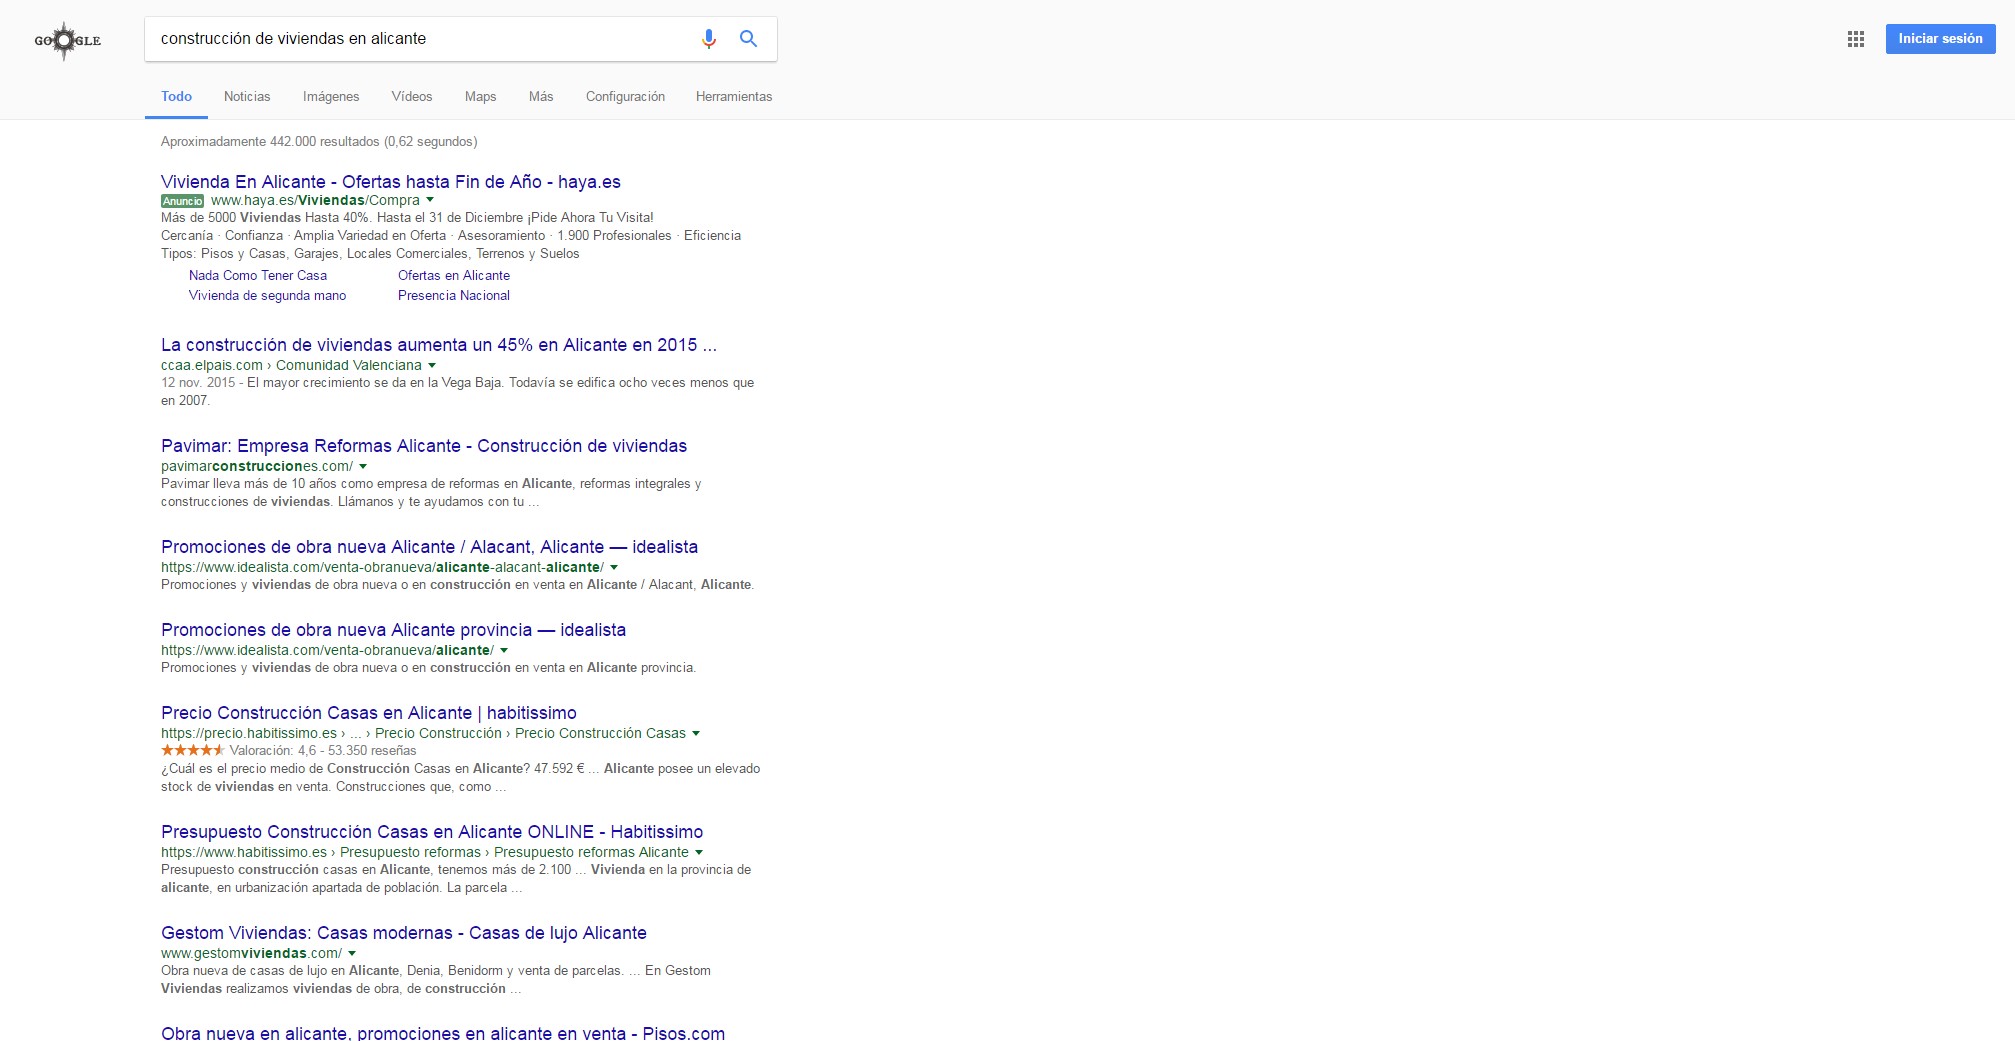 Resultados de búsqueda en Google para “construcción de viviendas en Alicante”